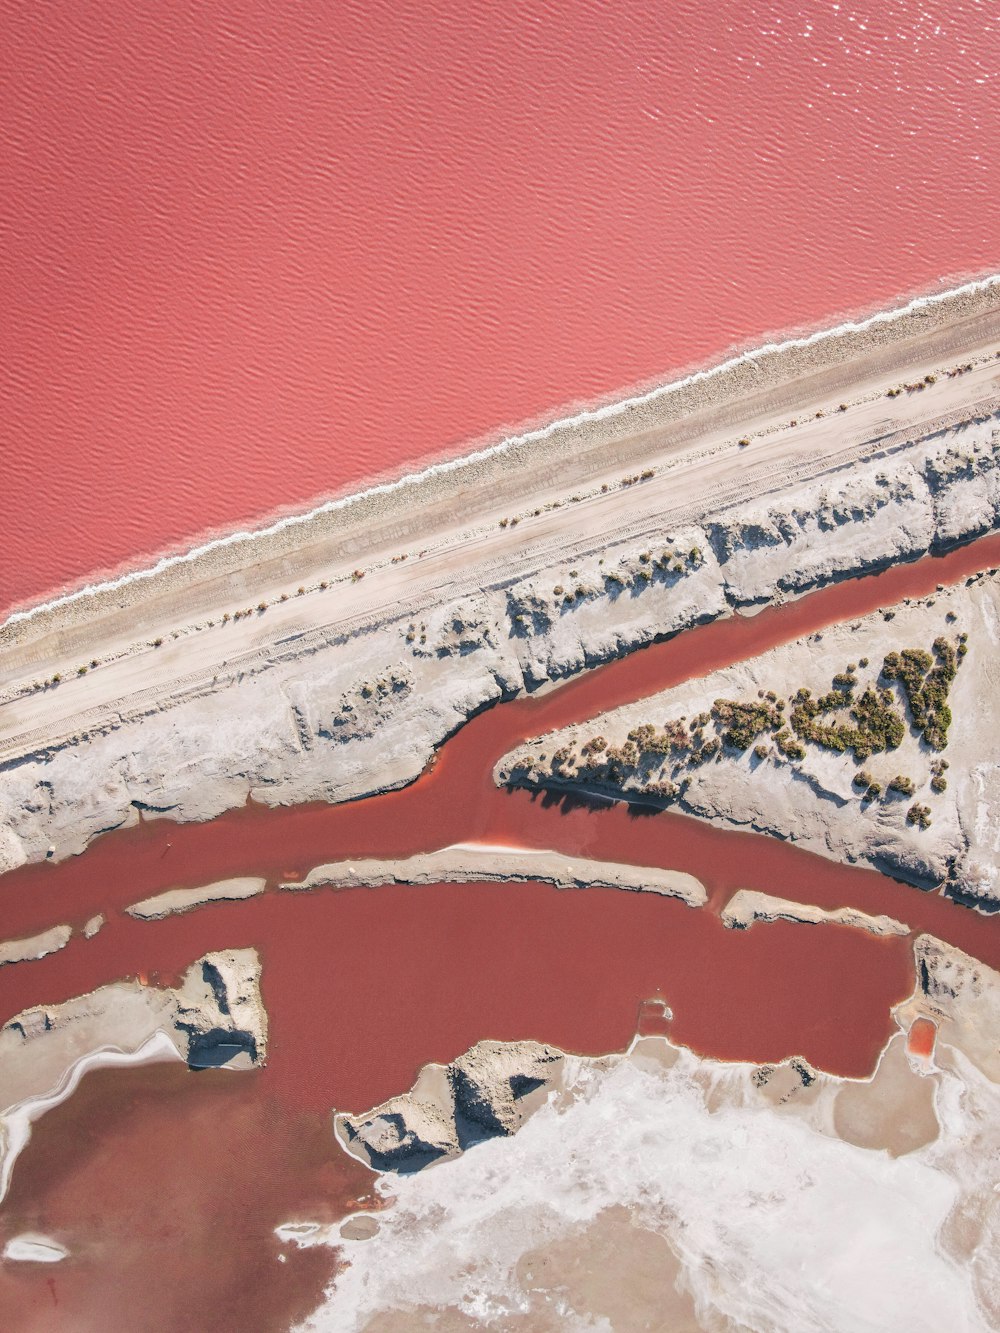 赤い水のある水域の空中写真